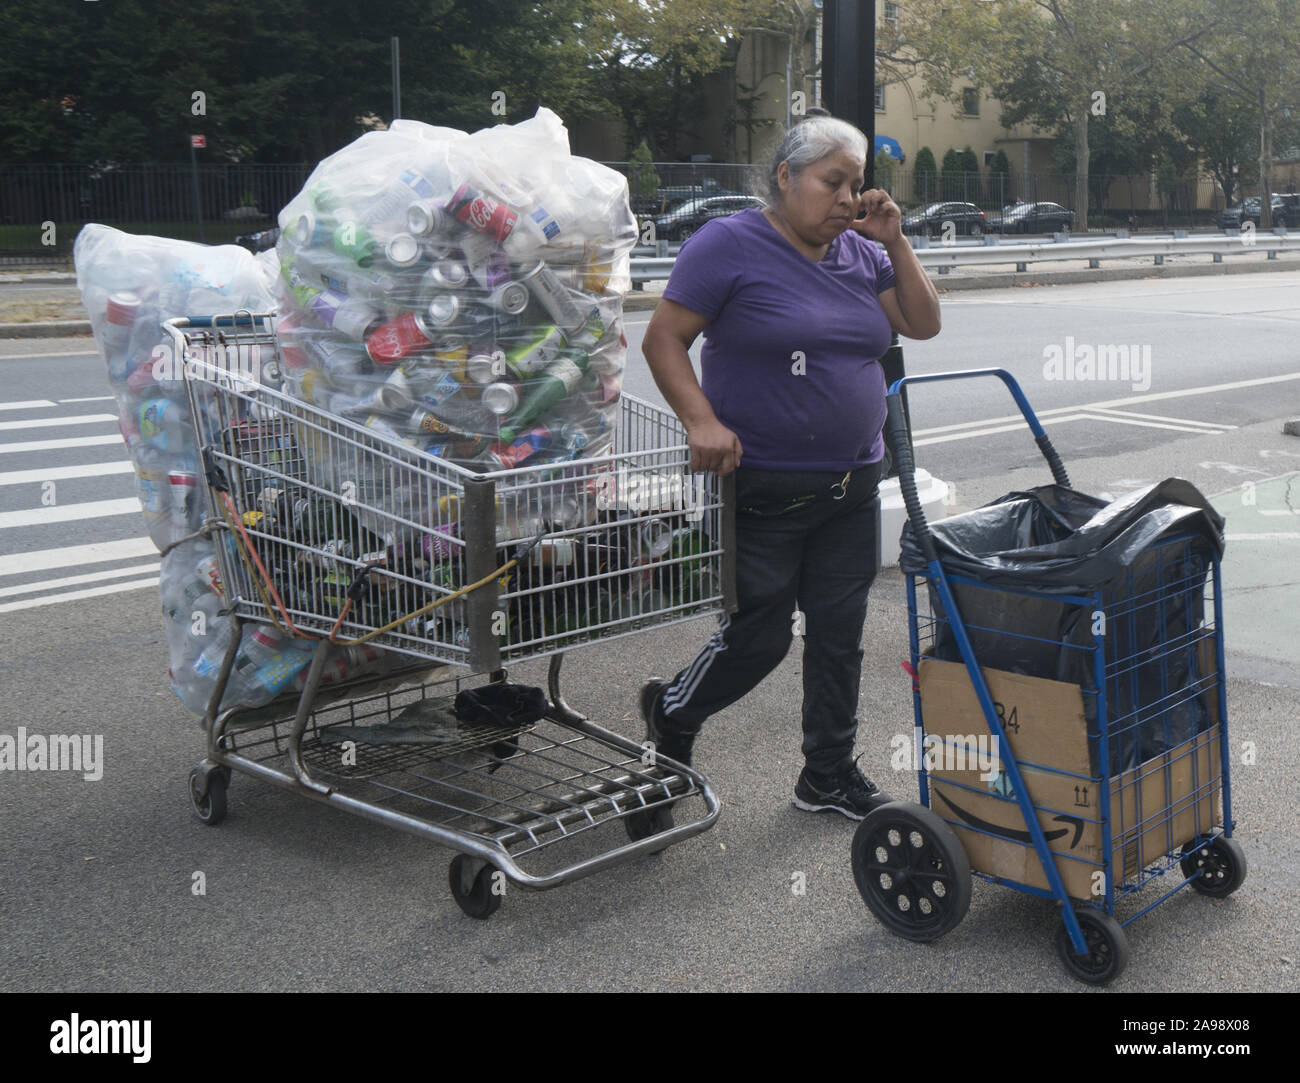 Les immigrants travaillent fort recueille des bouteilles et boîtes pour faire quelques dollars, sur la rue près de Prospect Park, Brooklyn, New York. Banque D'Images